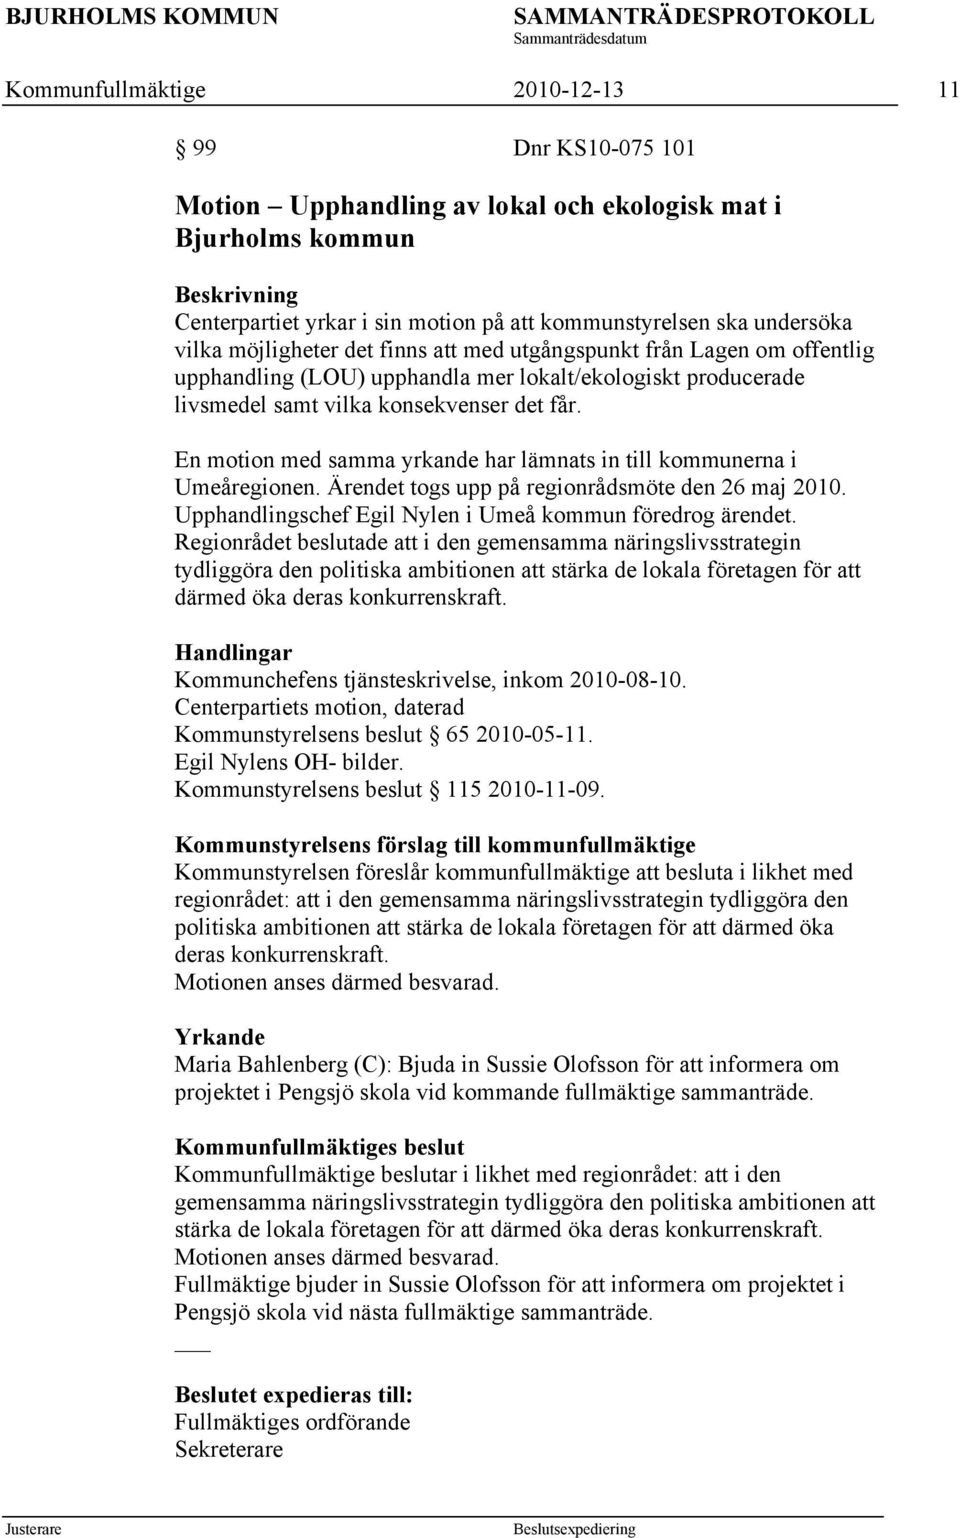 En motion med samma yrkande har lämnats in till kommunerna i Umeåregionen. Ärendet togs upp på regionrådsmöte den 26 maj 2010. Upphandlingschef Egil Nylen i Umeå kommun föredrog ärendet.